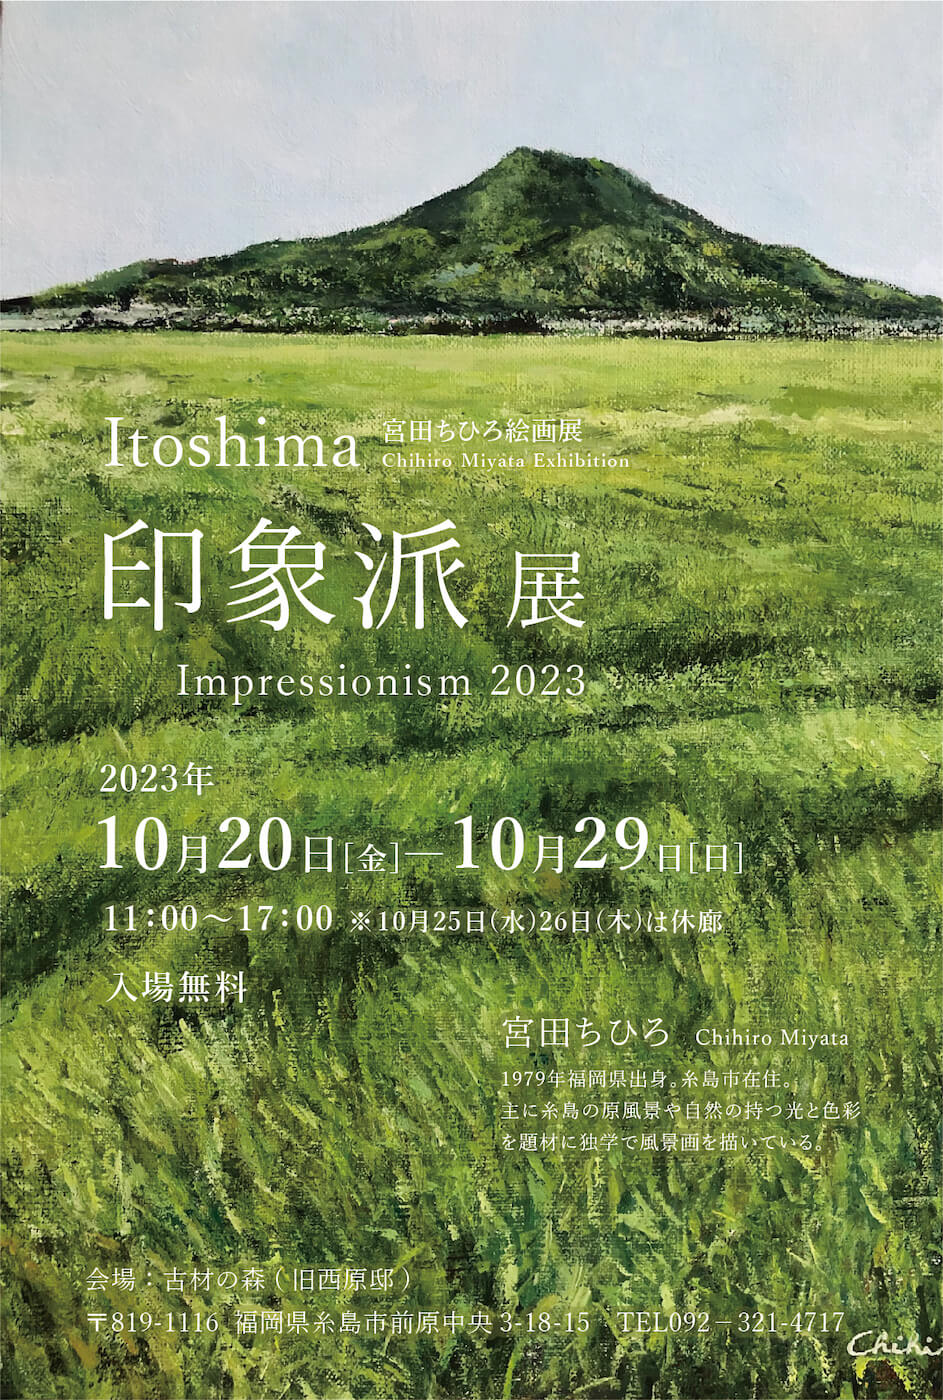 Itoshima Impressionist Exhibition 2023: Chihiro Miyata Painting Exhibition, Itoshima印象派展2023 宮田ちひろ絵画展 